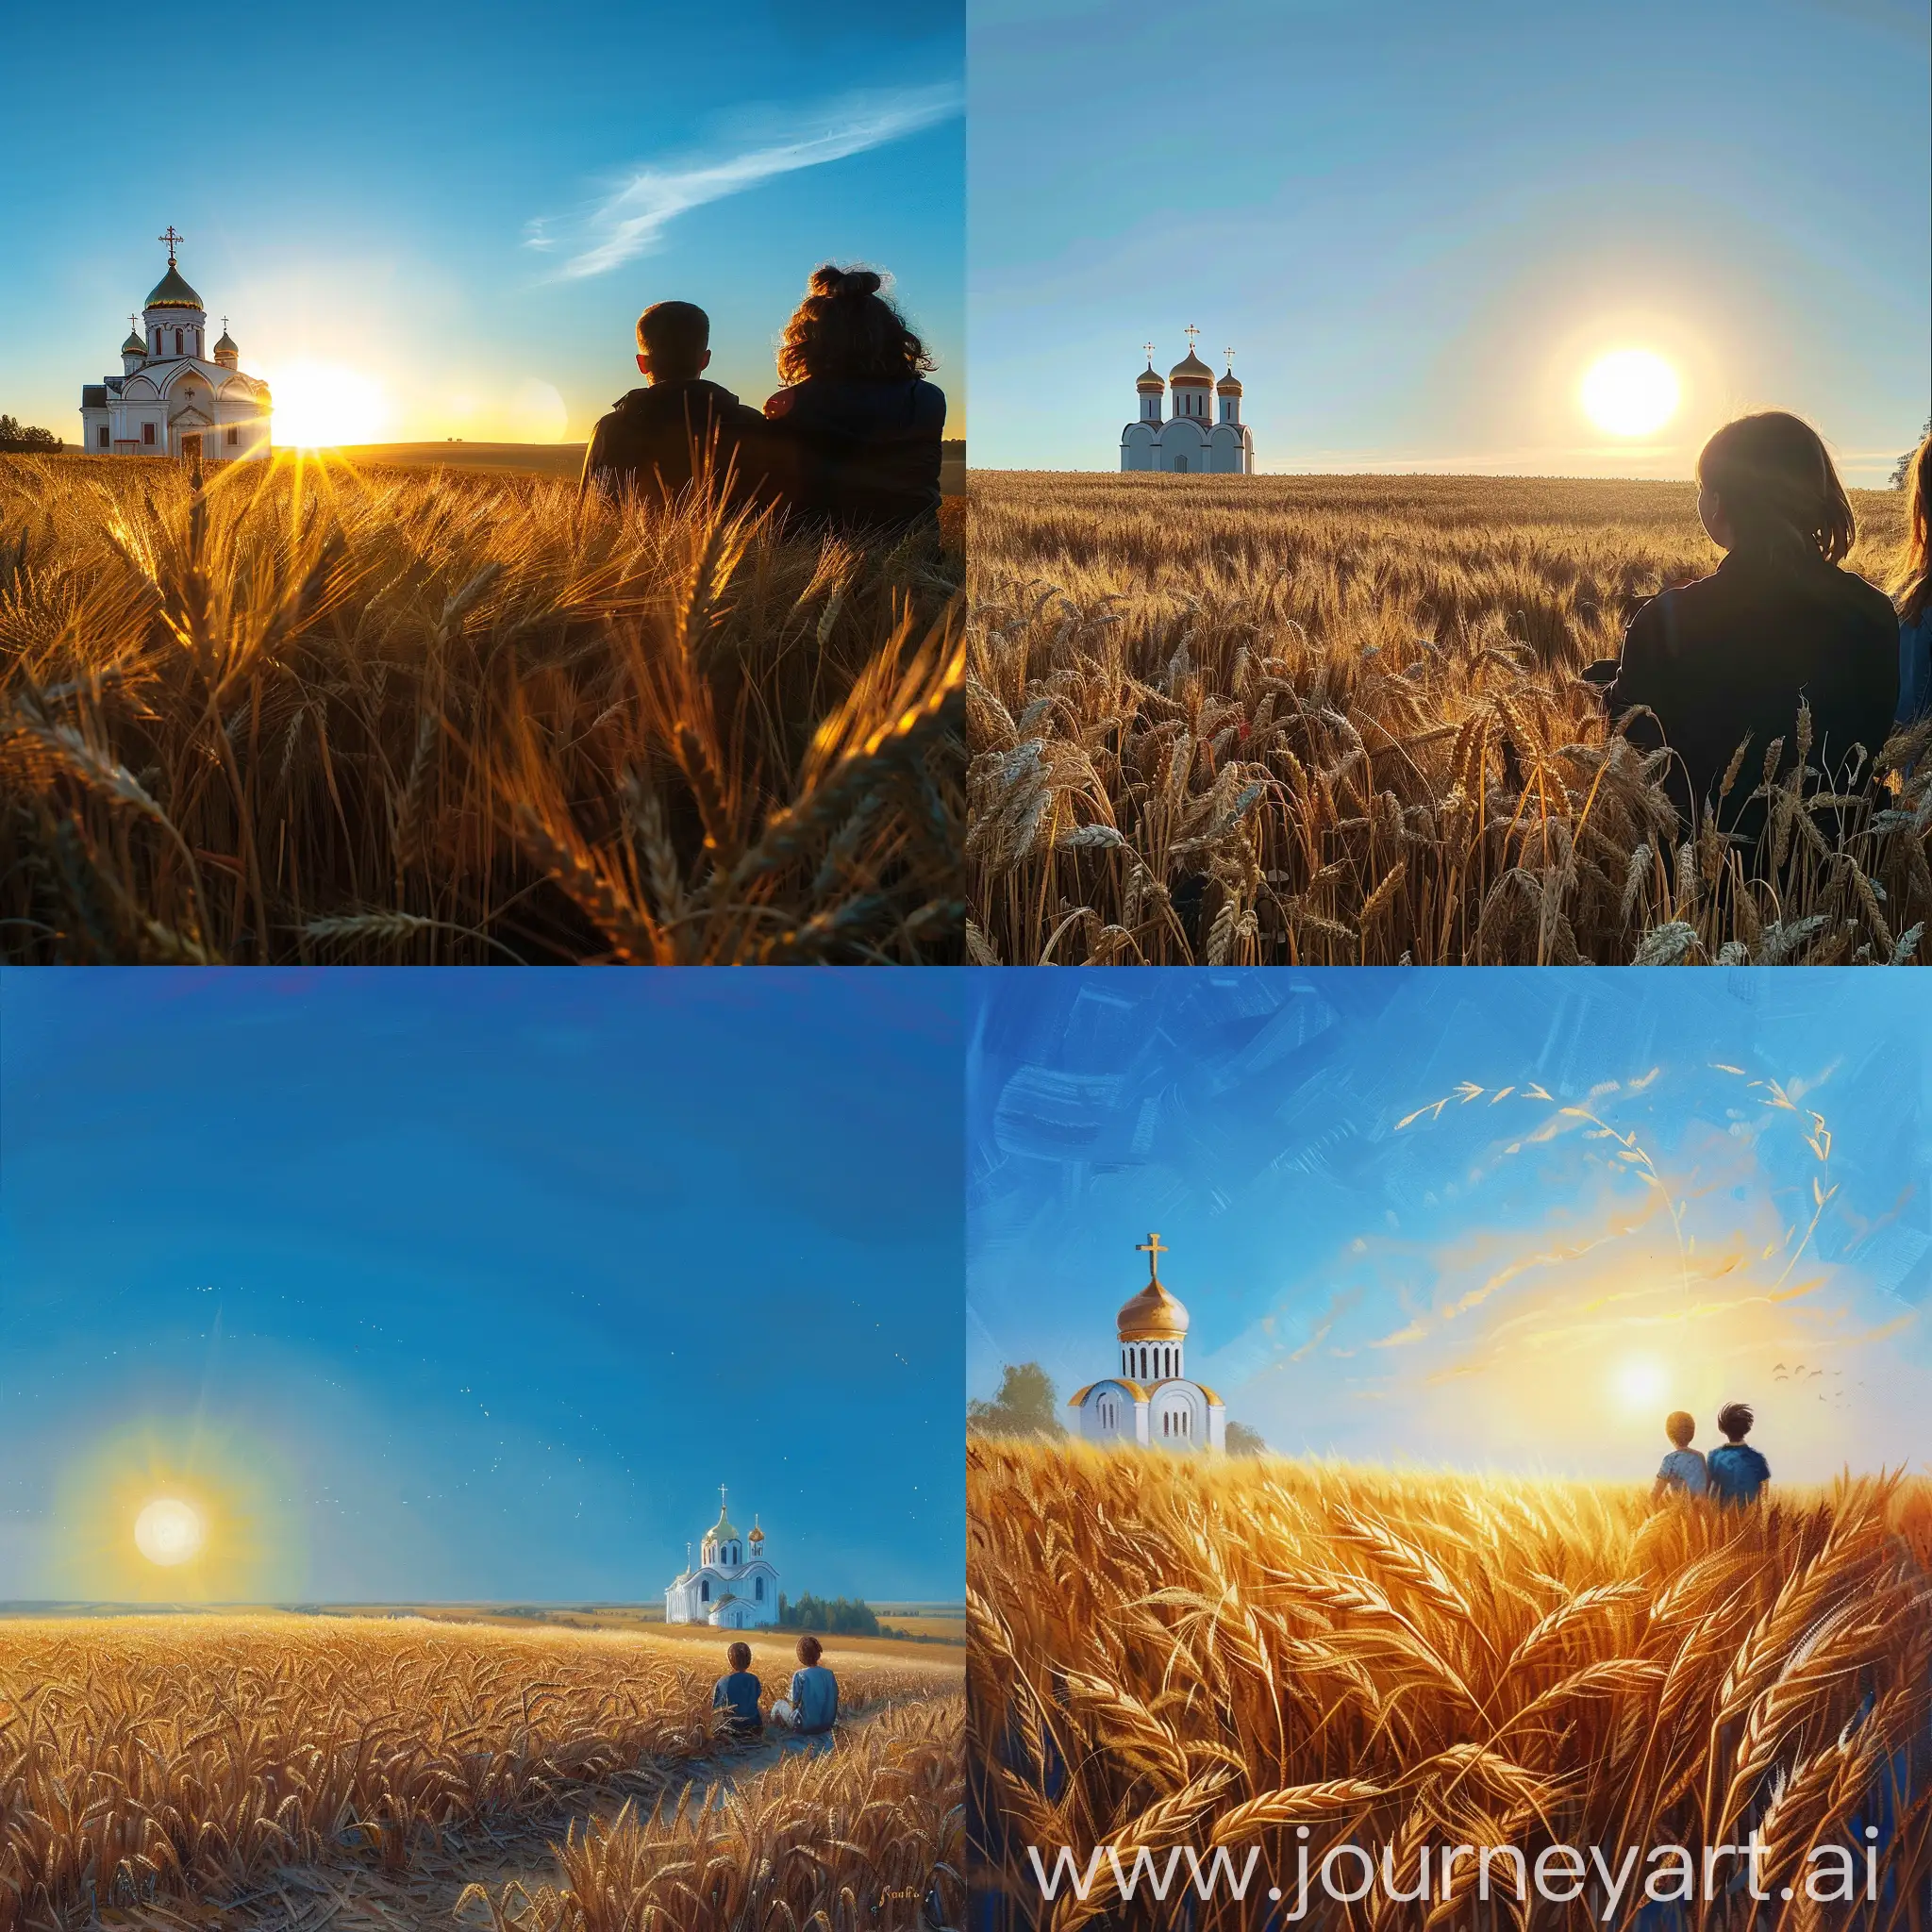 Солнце восходит над пшеничным полем, голубое небо, на горизонте православная церковь белого цвета, двое смотрят на восходящее солнце